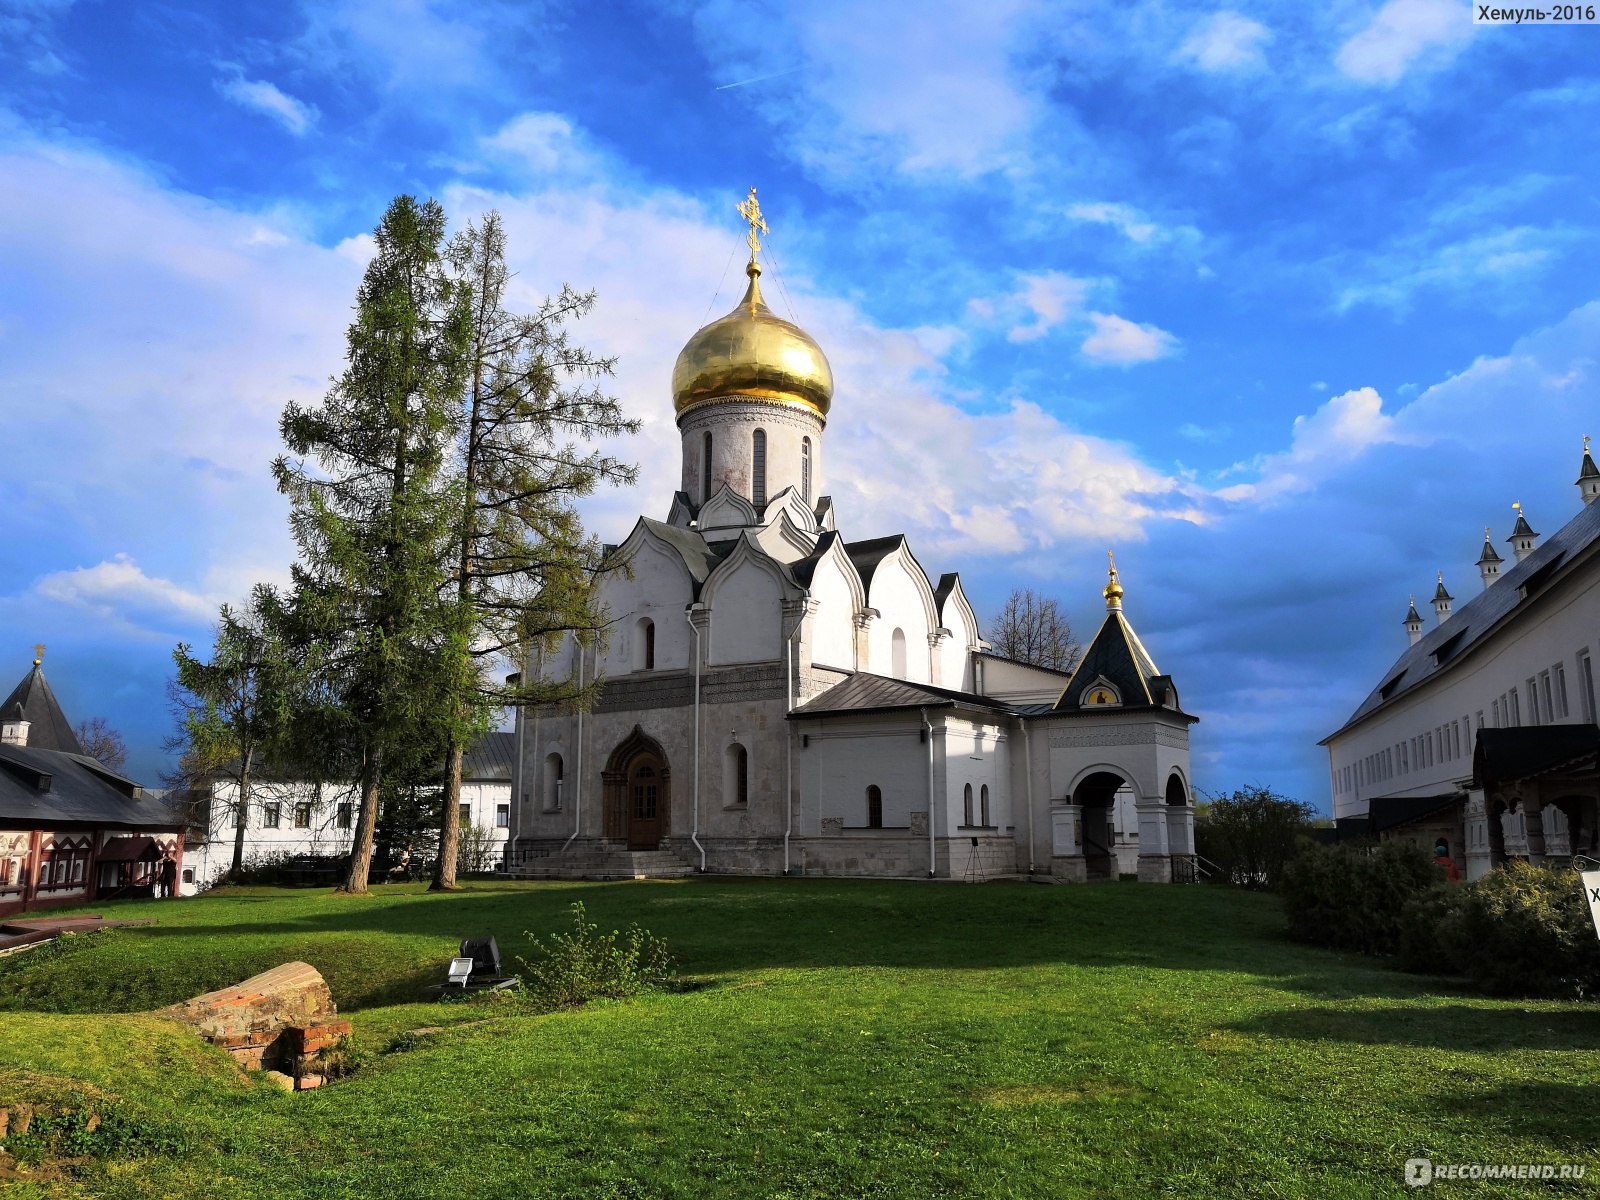 Собор Саввино-Сторожевского в Звенигородского монастыре